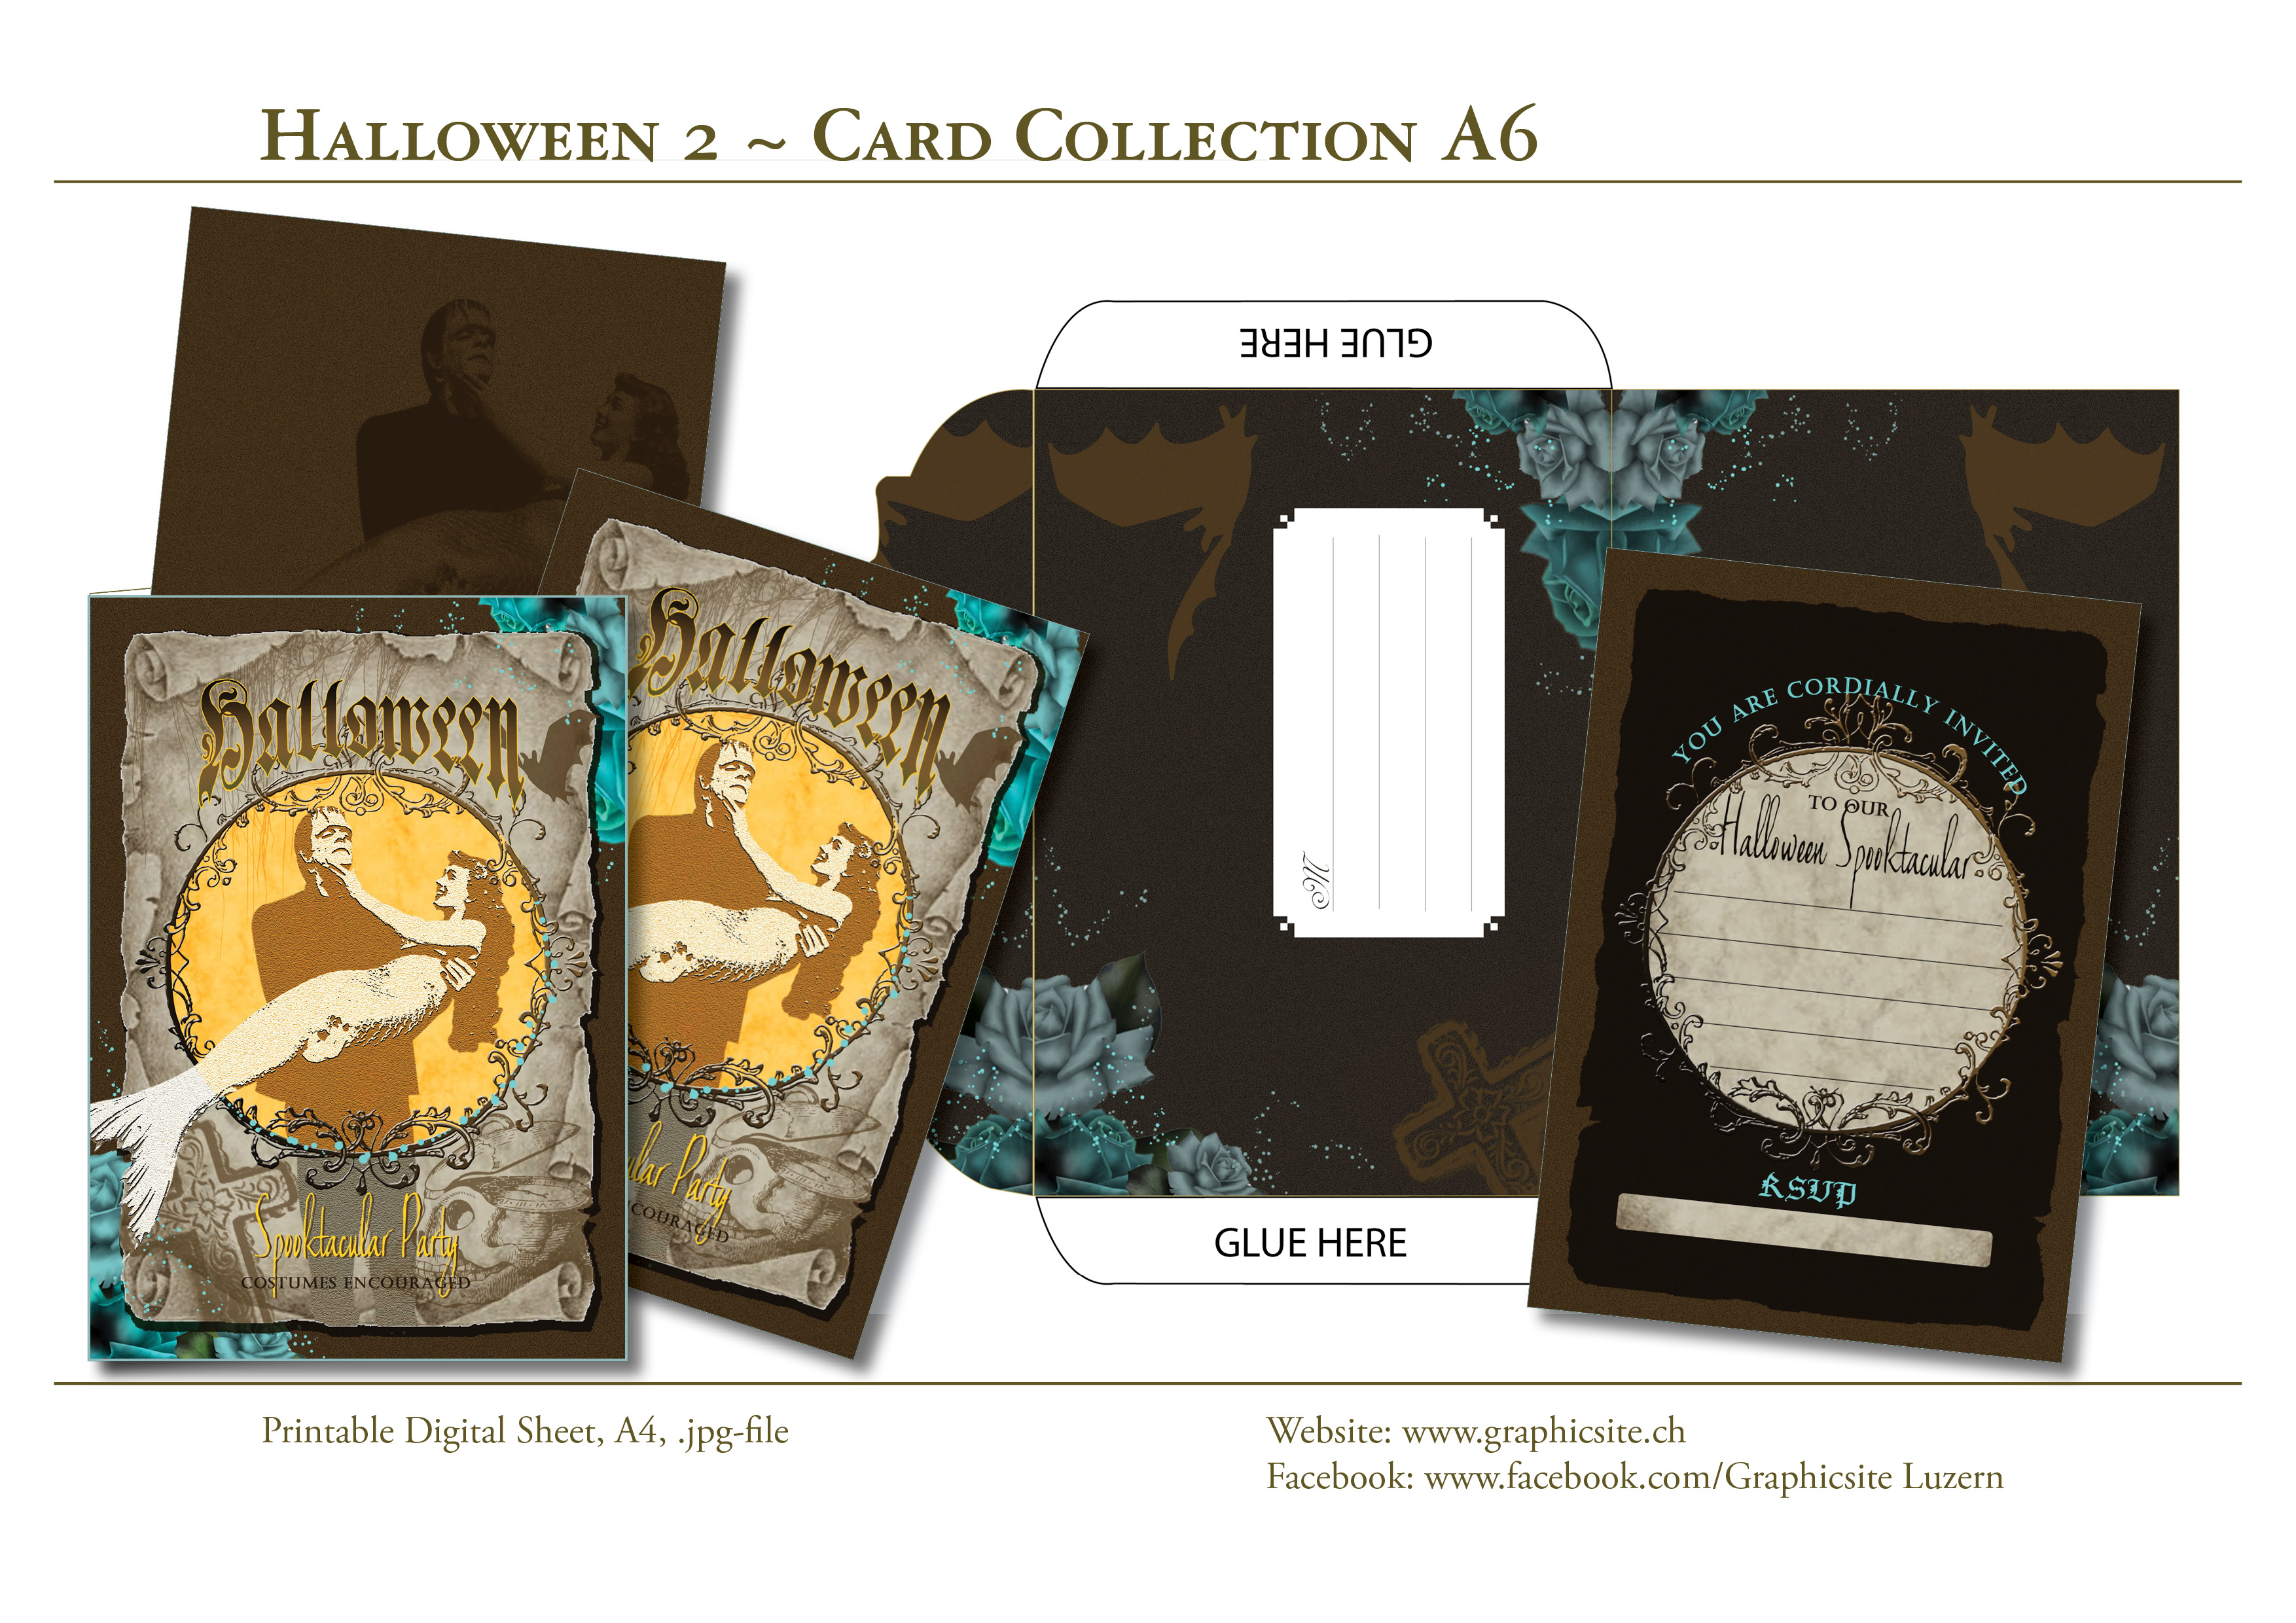 Karten selber drucken - Halloween 2 - Kartenkollektion - DIN A6 - Spooktacular - Graphic Design Luzern, Schweiz